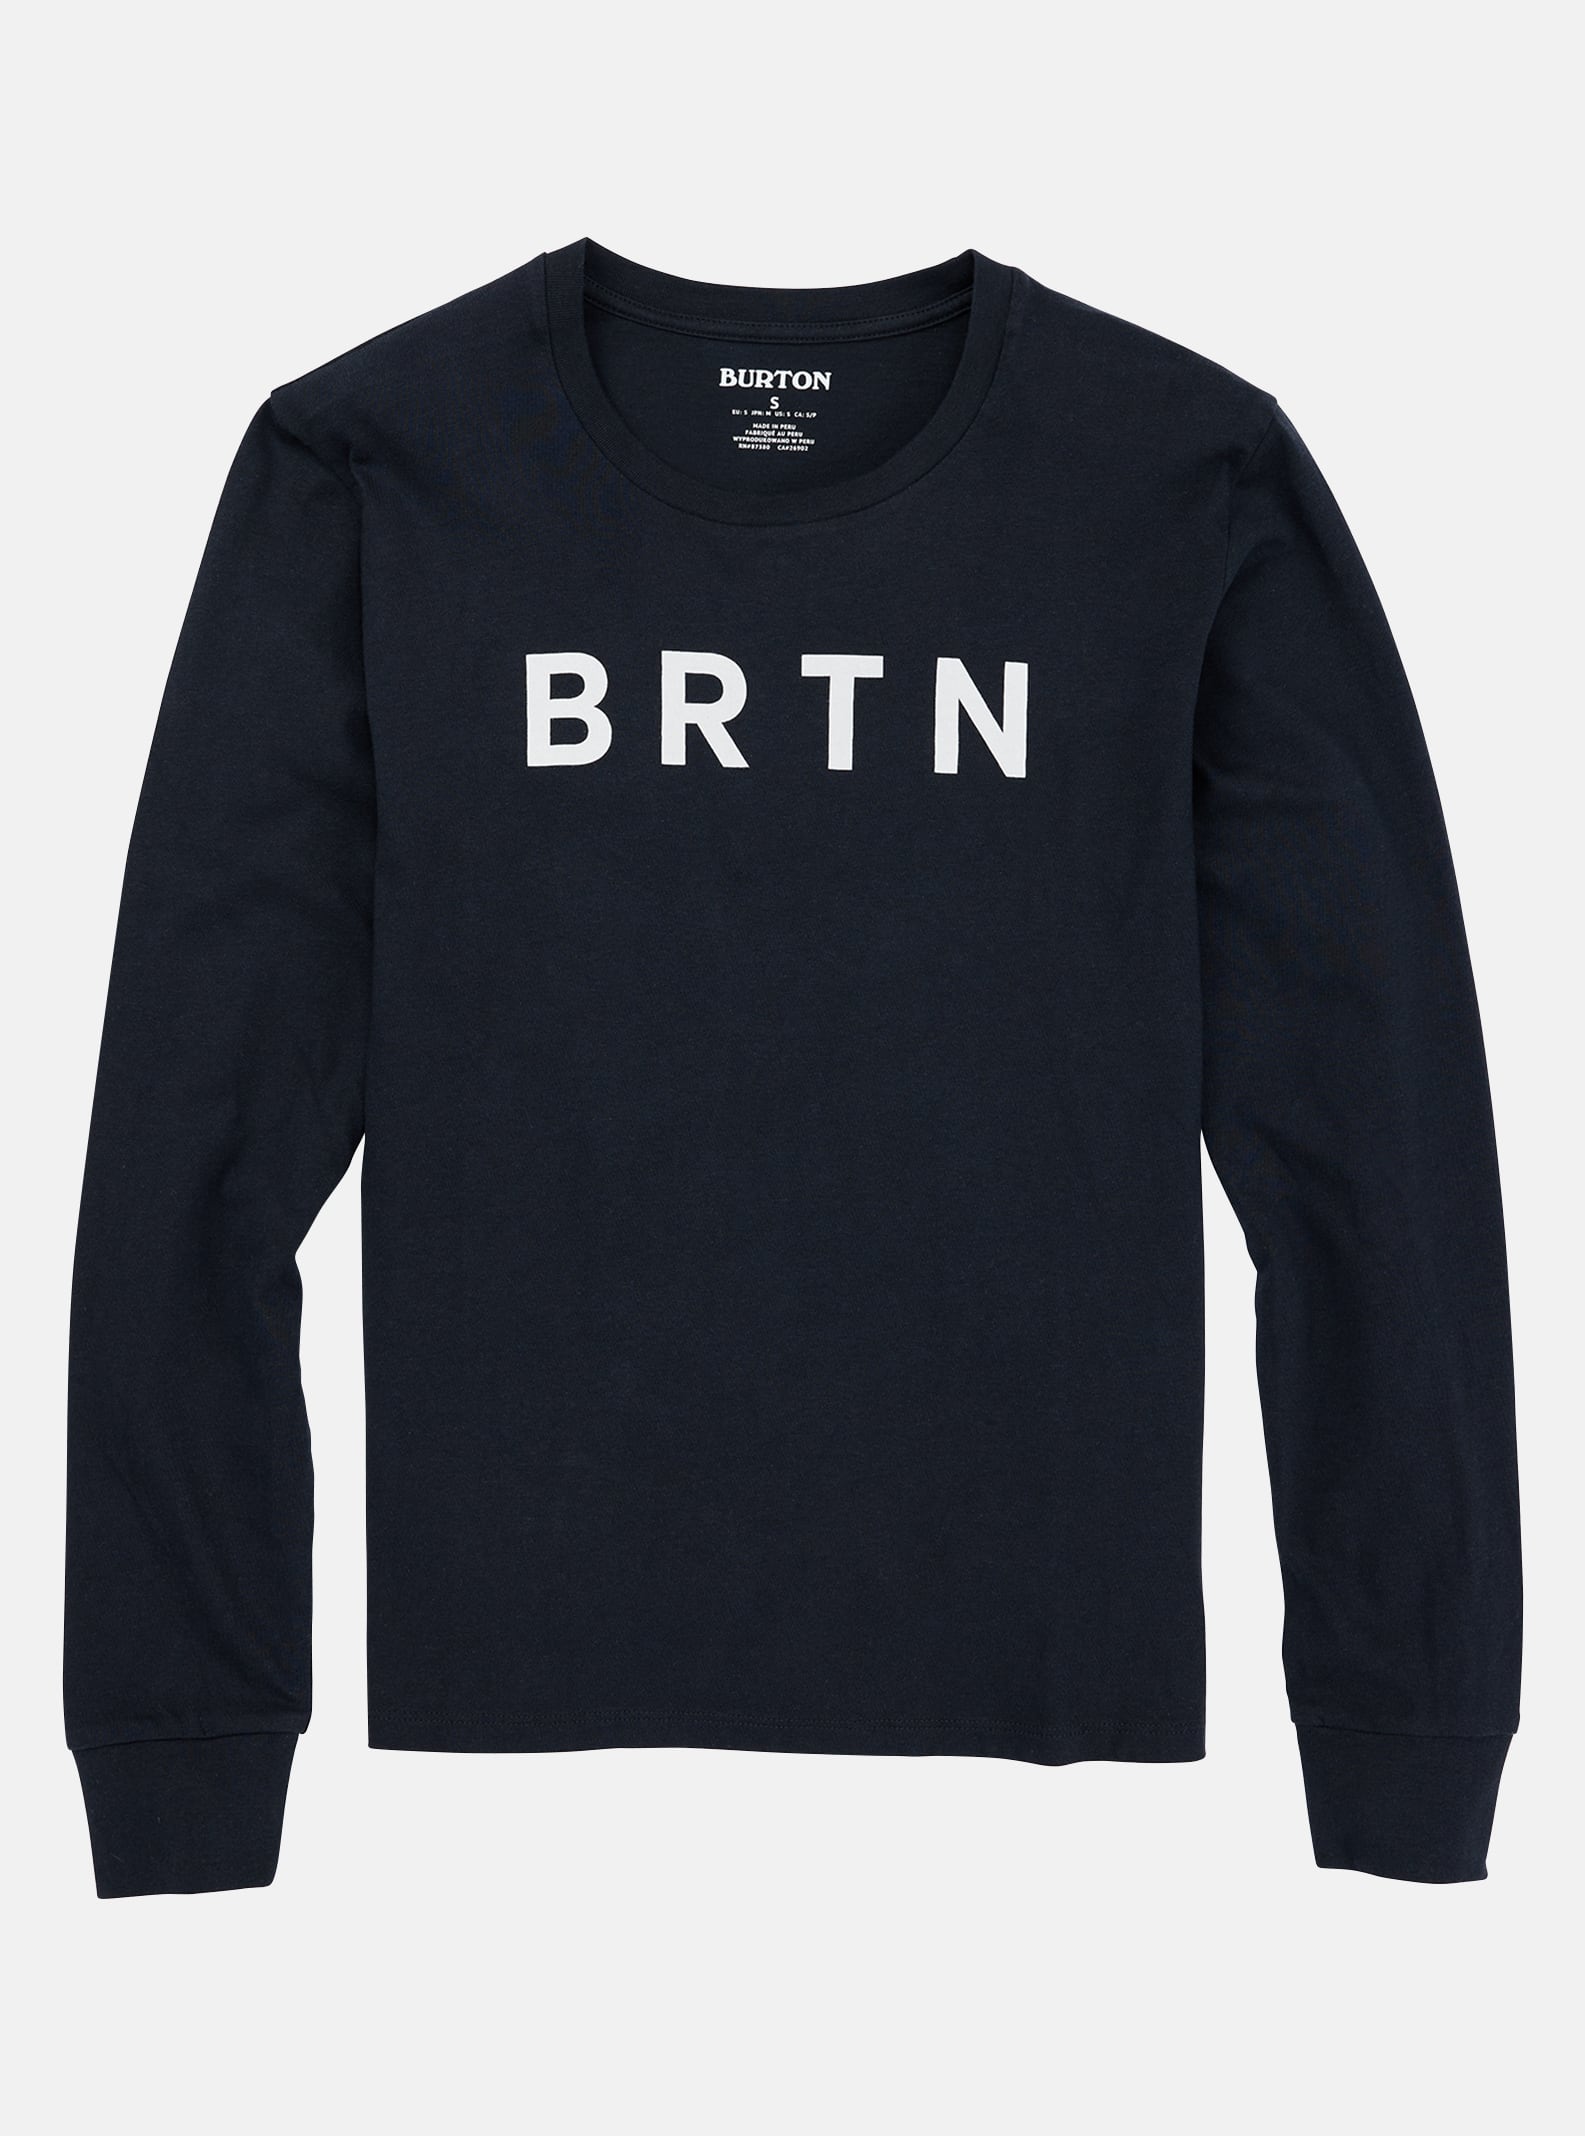 Burton BRTN långärmad t-shirt för damer, True Black, M